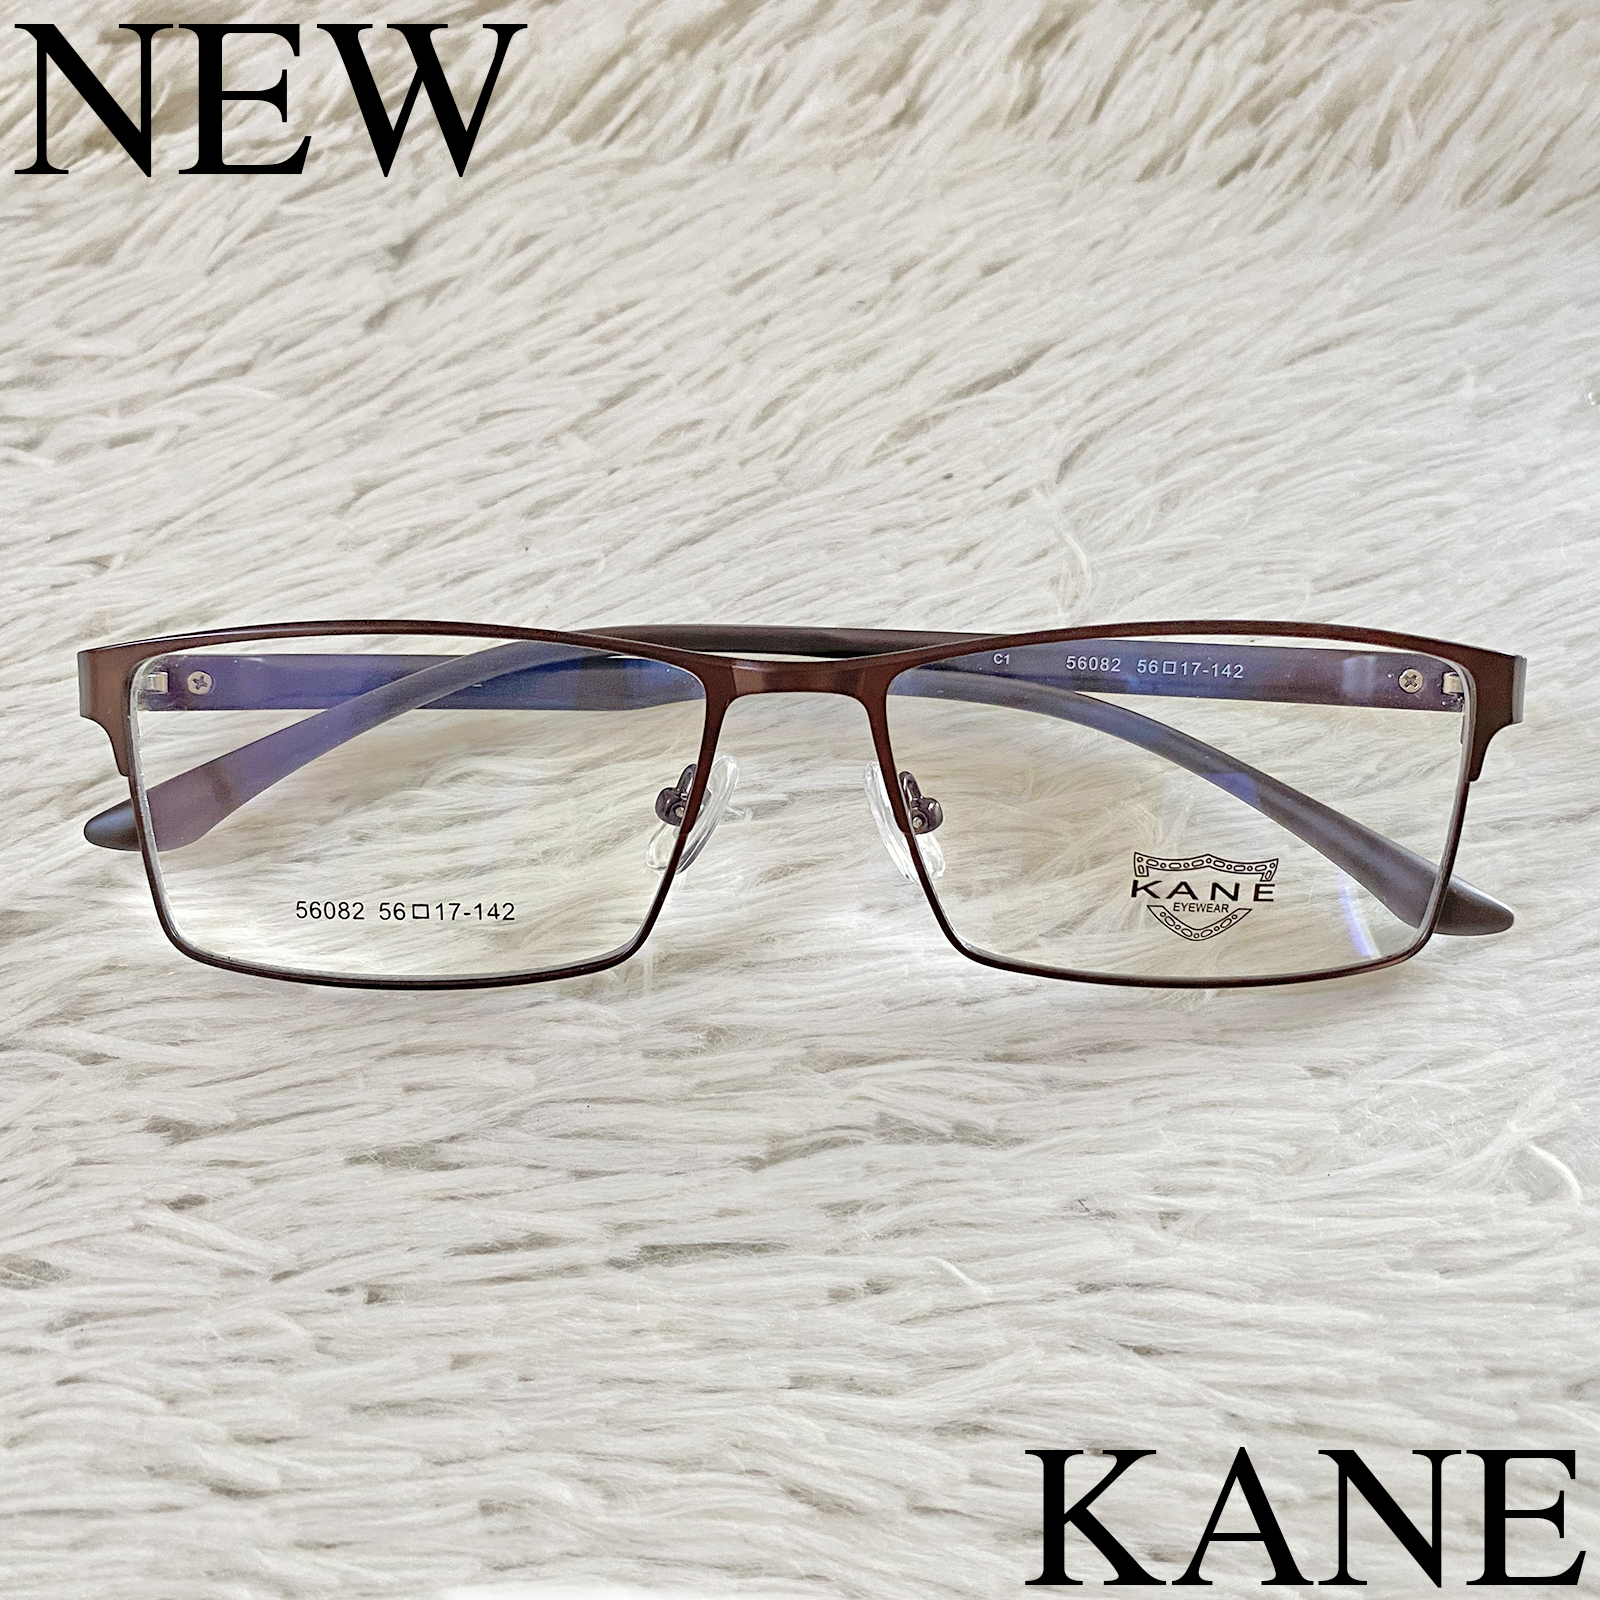 แว่นตาสำหรับตัดเลนส์ กรอบแว่นตา แว่นตา ชาย-หญิง Fashion รุ่น KANE 6082 กรอบเต็ม ทรงเหลี่ยม ขาข้อต่อ Stainless Steel